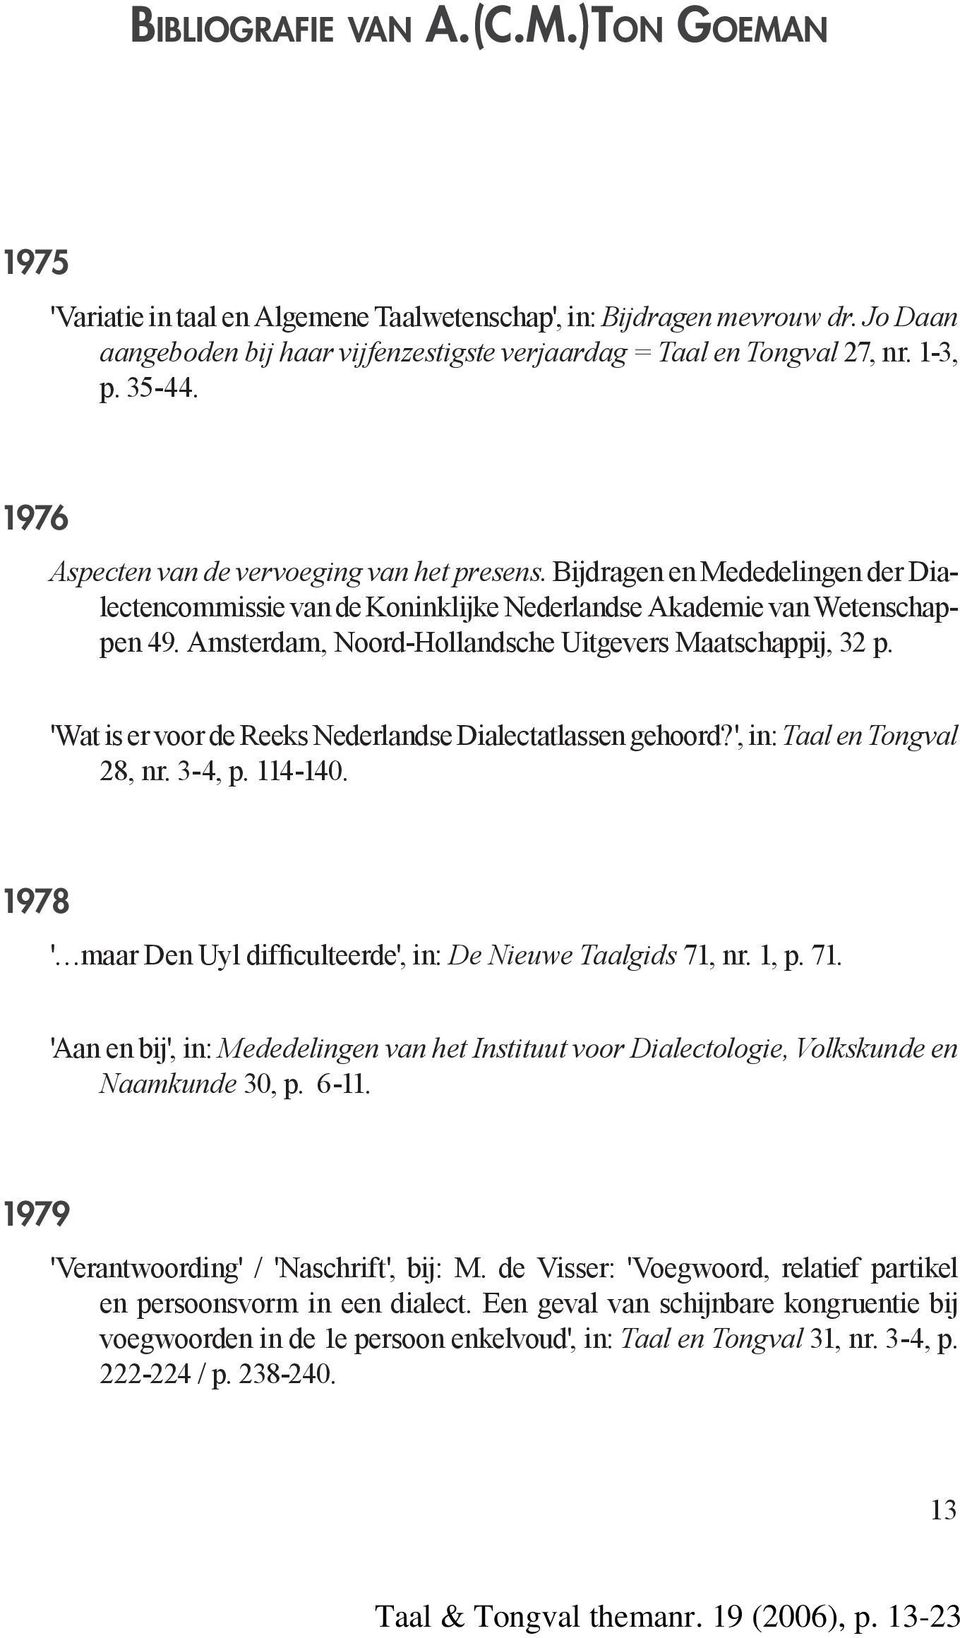 Amsterdam, Noord-Hollandsche Uitgevers Maatschappij, 32 p. 'Wat is er voor de Reeks Nederlandse Dialectatlassen gehoord?', in: Taal en Tongval 28, nr. 3-4, p. 114-140.